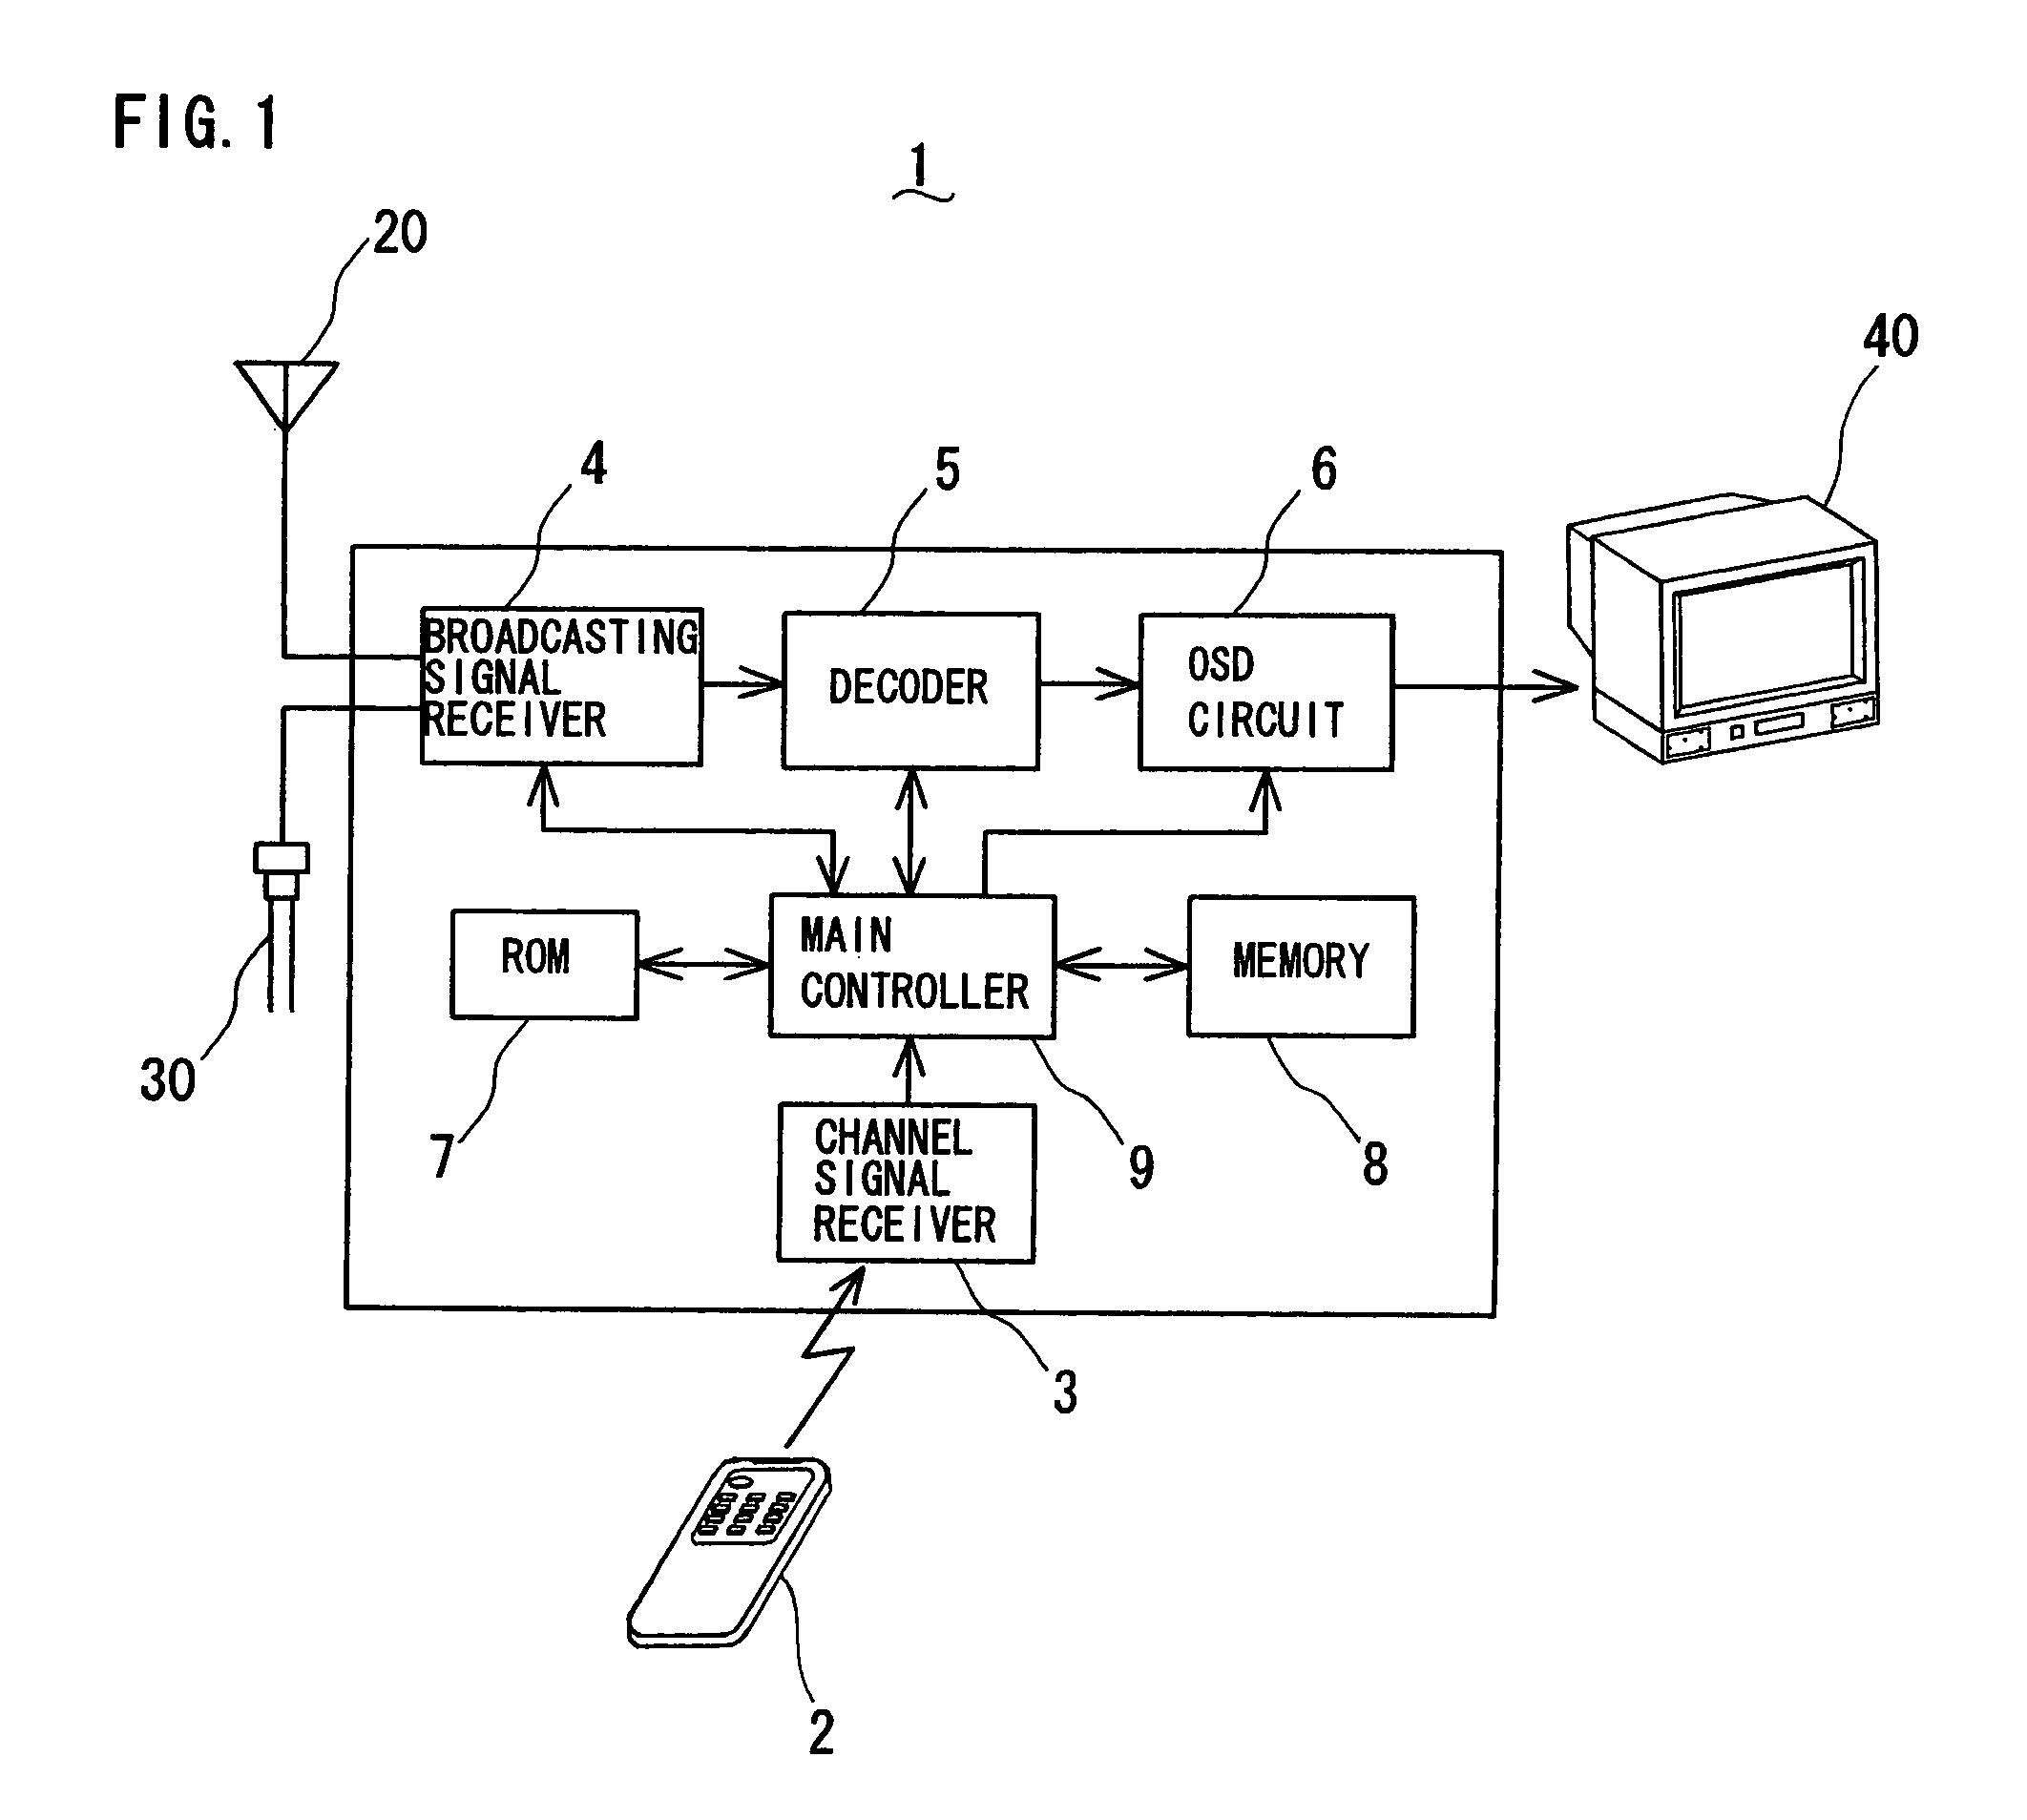 Digital/analog TV receiver